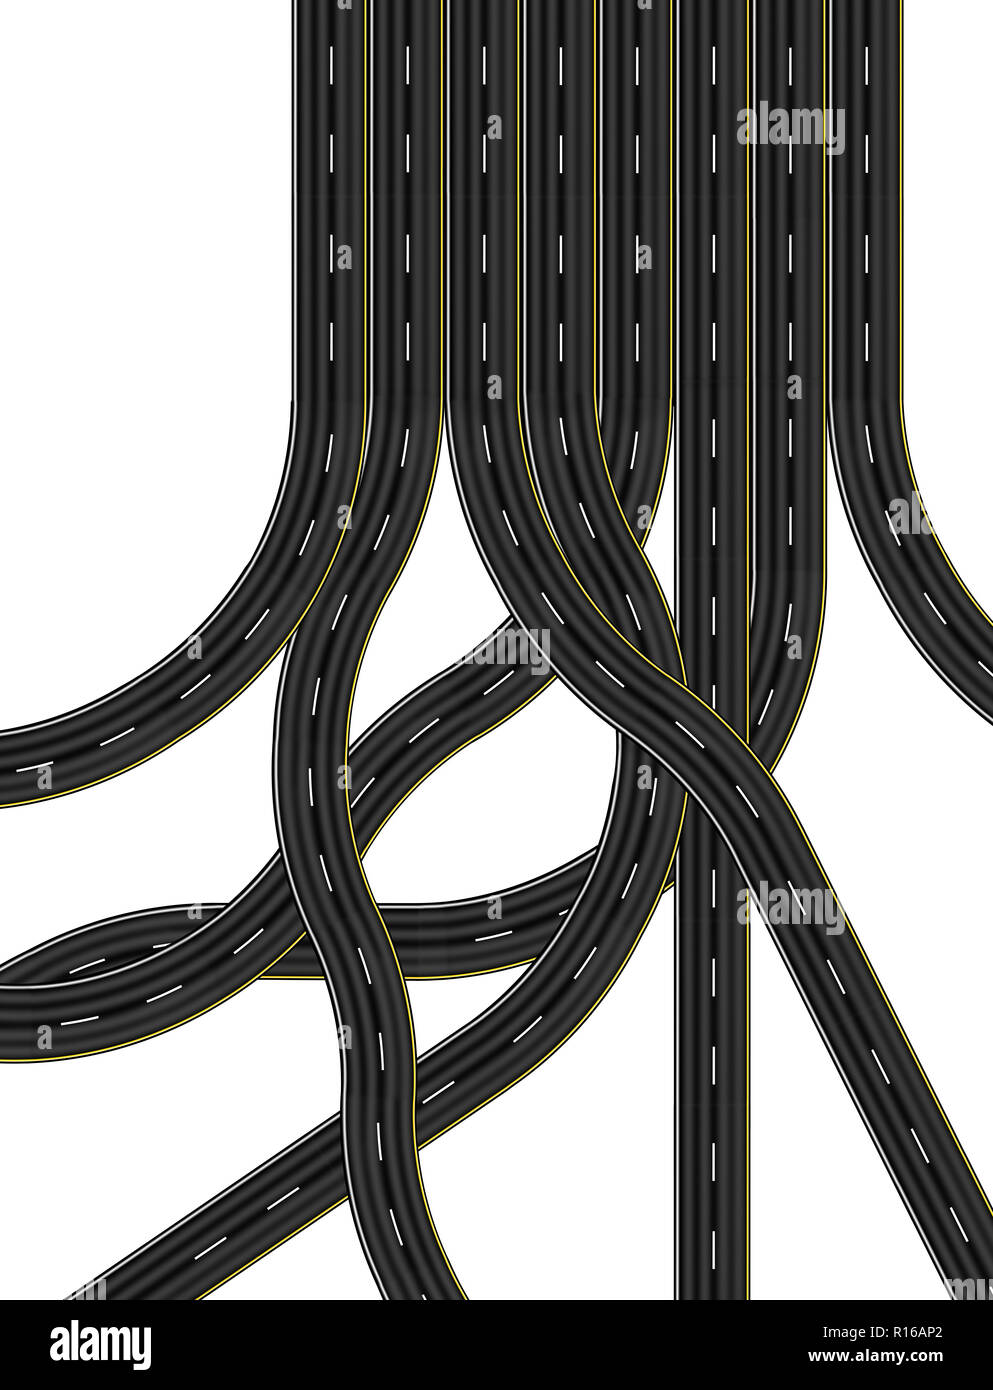 Les intersections et glisser les routes menant à huit voies, d'une image numérique, overhead view Banque D'Images